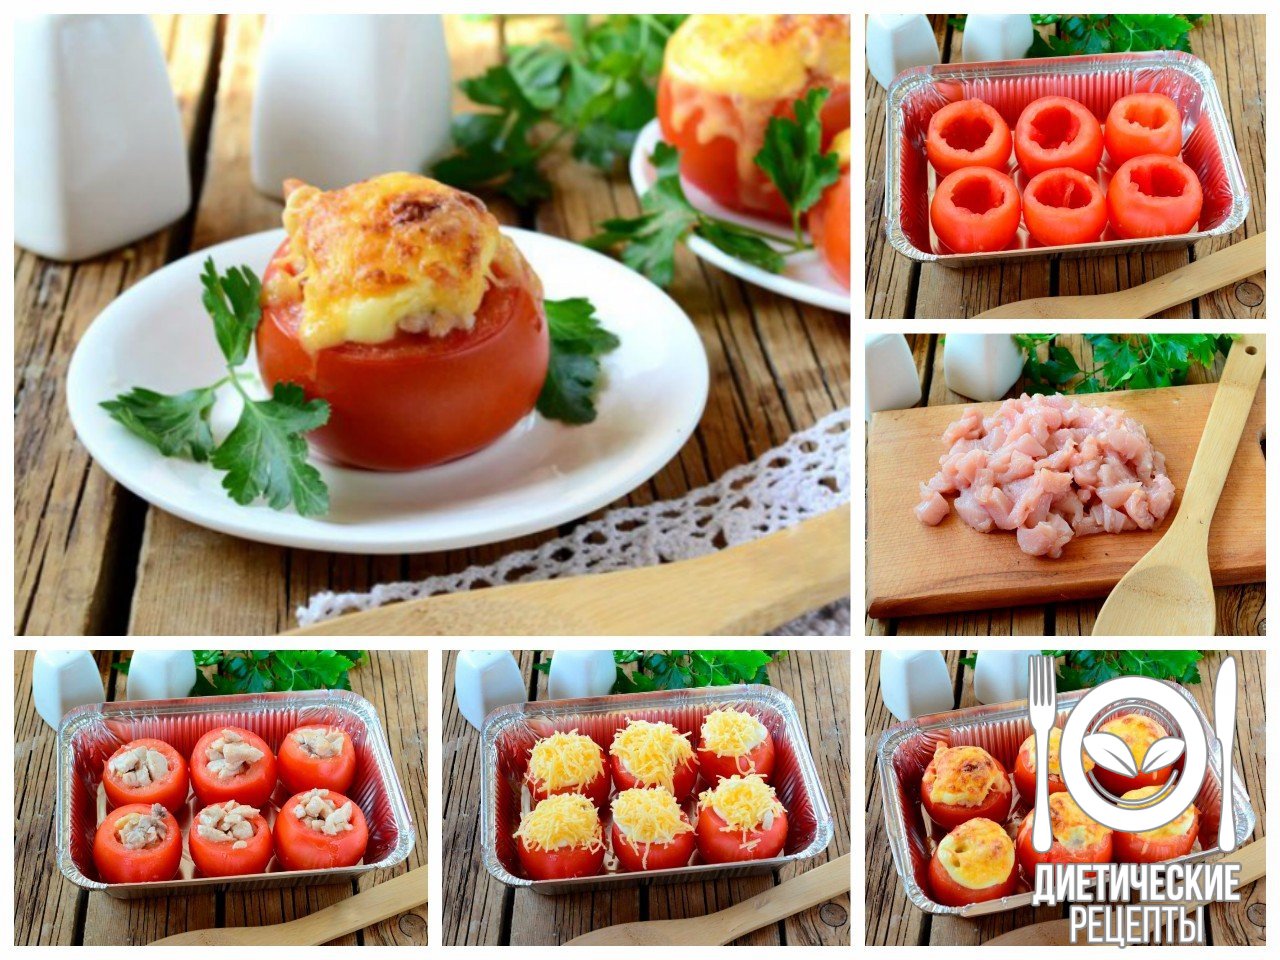 ПП-ужин: Фаршированные помидоры без единой лишней калории!